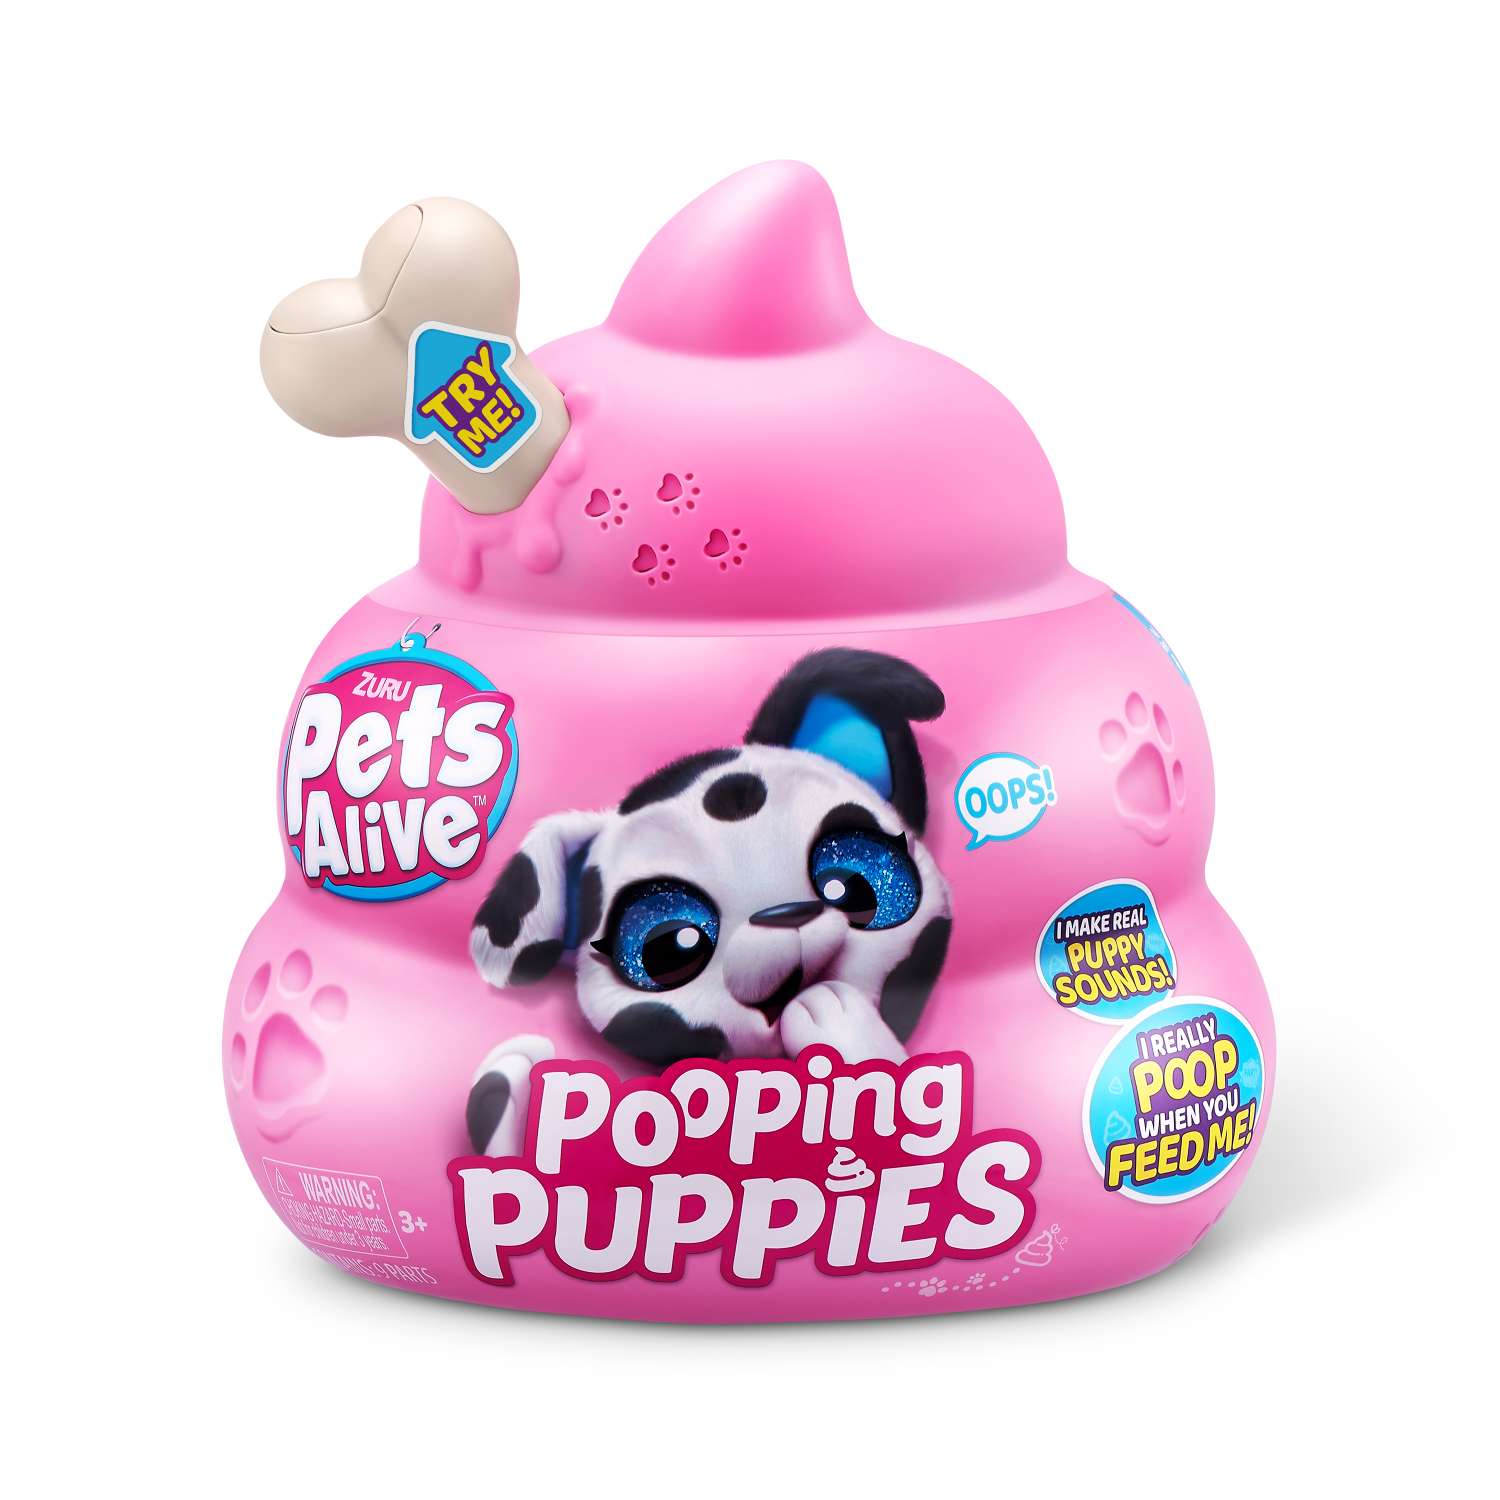 Игрушка Pets Alive Pooping Puppies Капсула в непрозрачной упаковке (Сюрприз) 9542 - фото 6